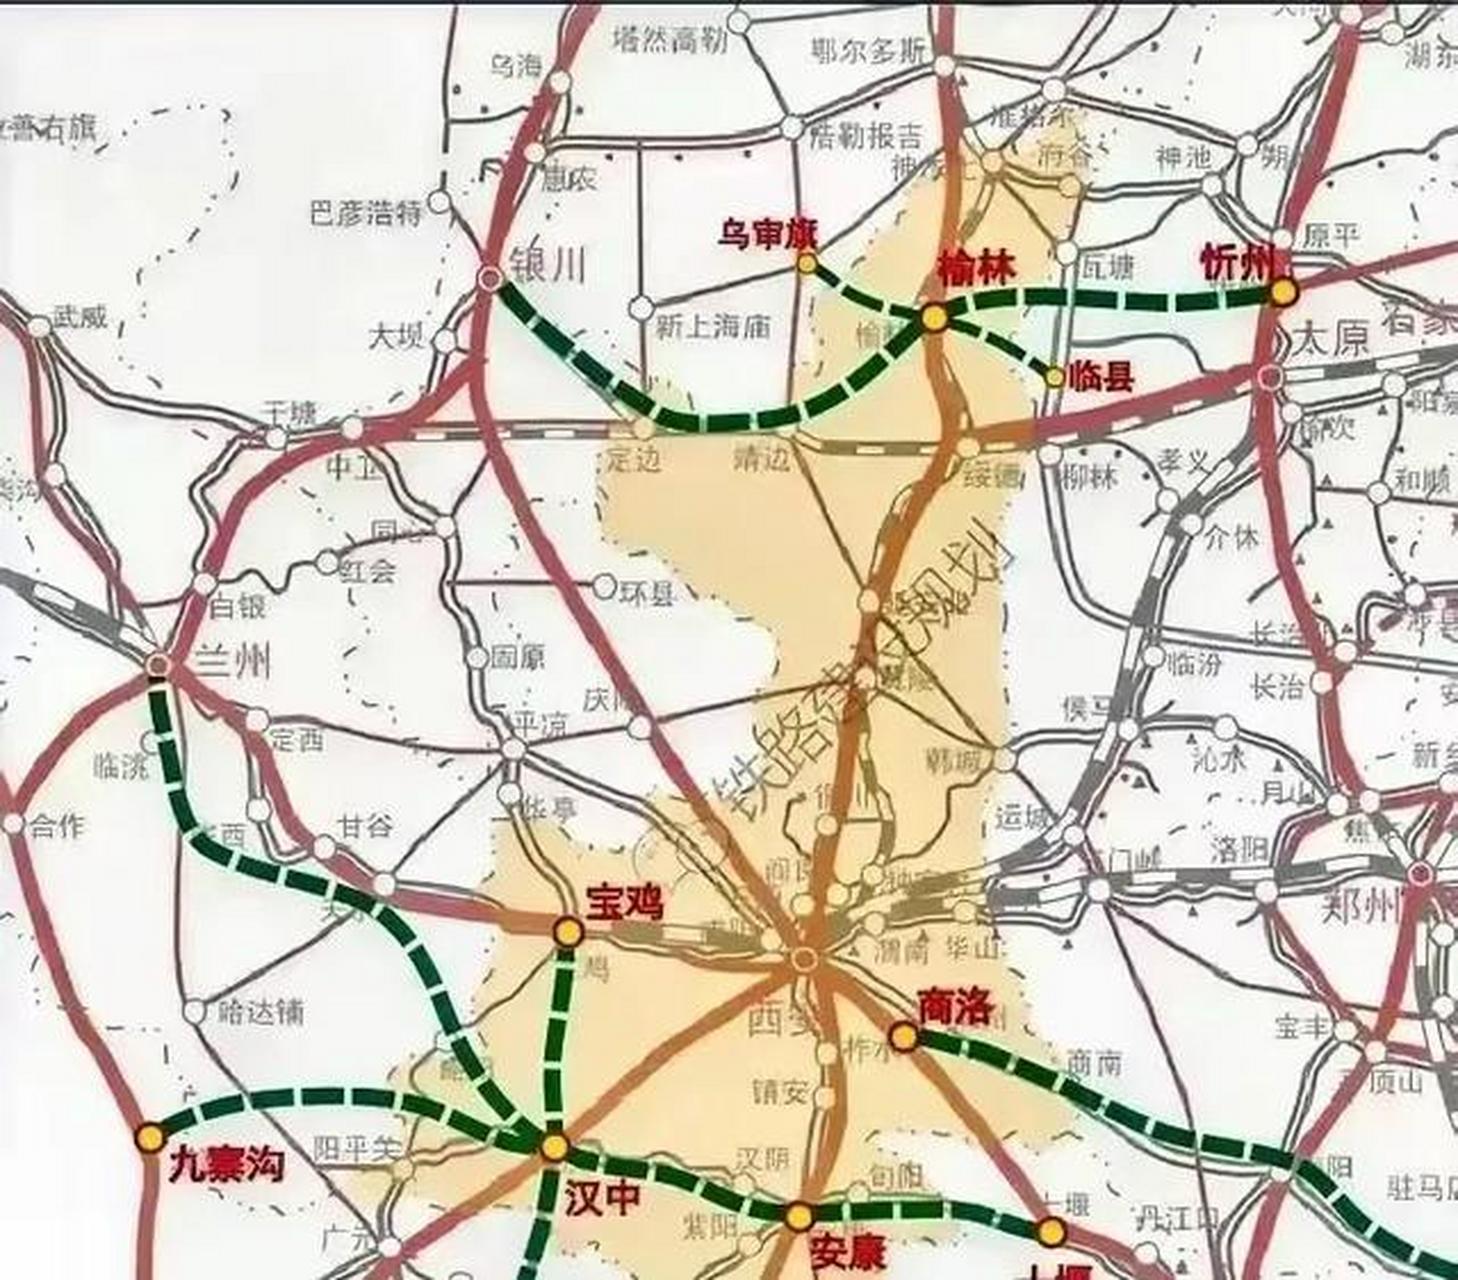 陕西高铁规划示意图,除了现在的西安,宝鸡两个高铁枢纽,未来要打造